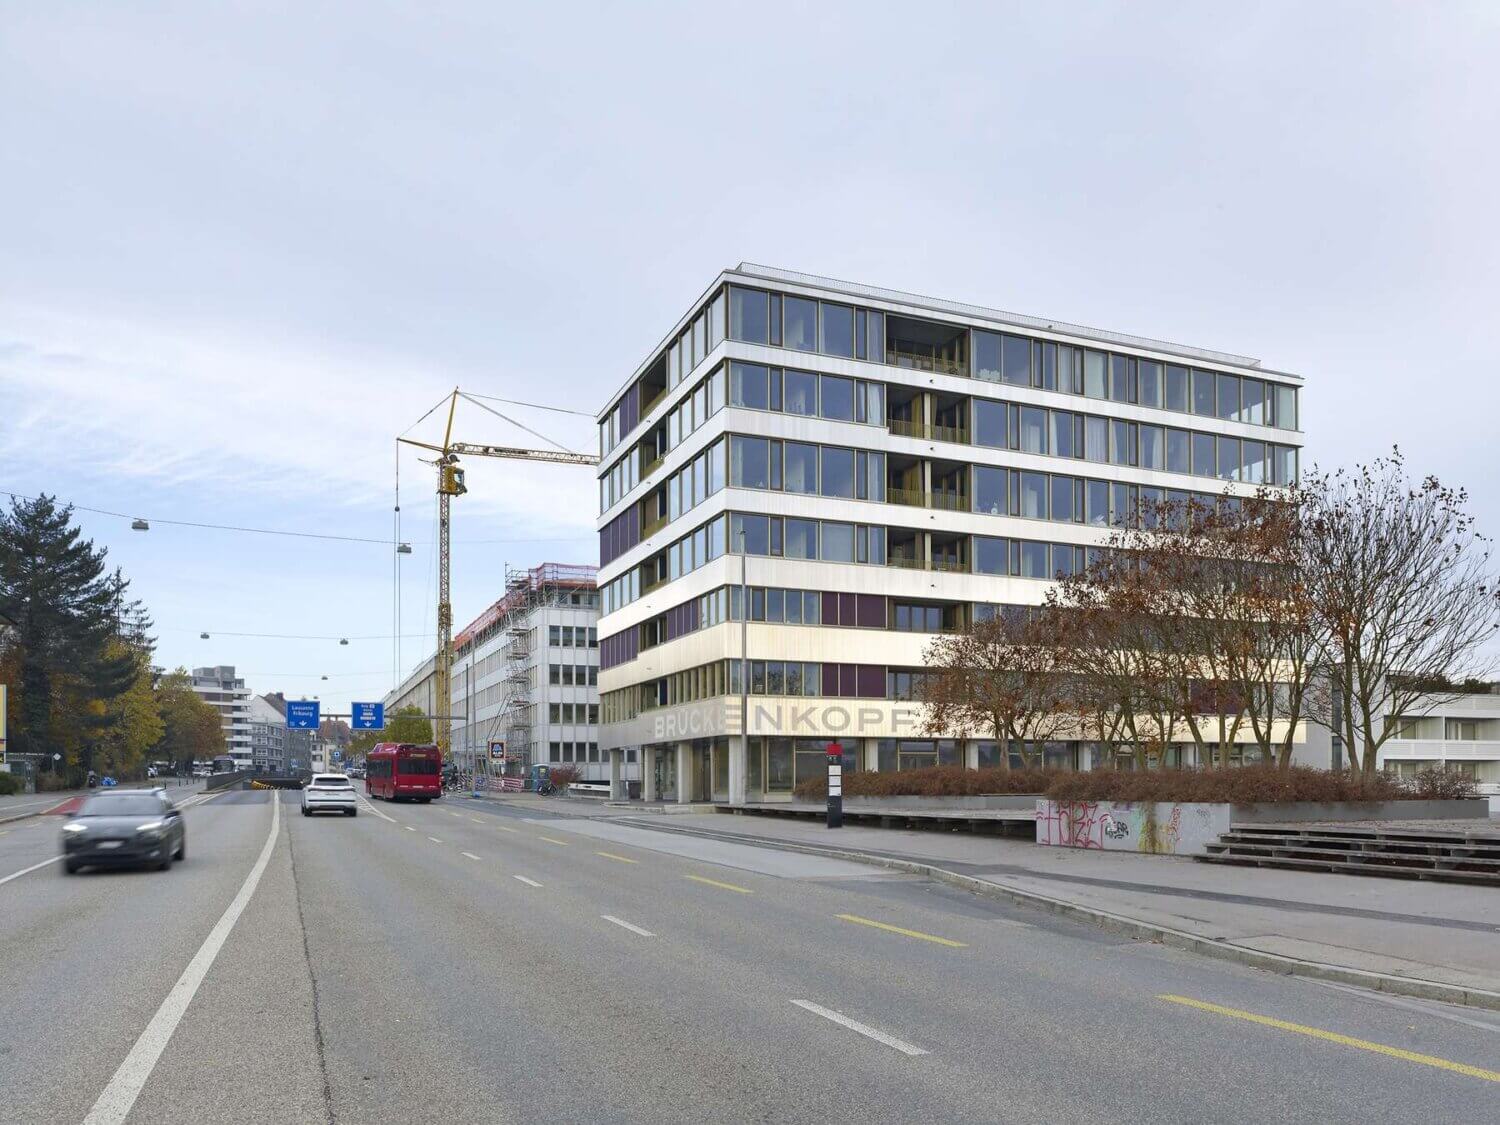 Brückenkopf West, Umnutzung Bürohaus in Wohnen, Bern